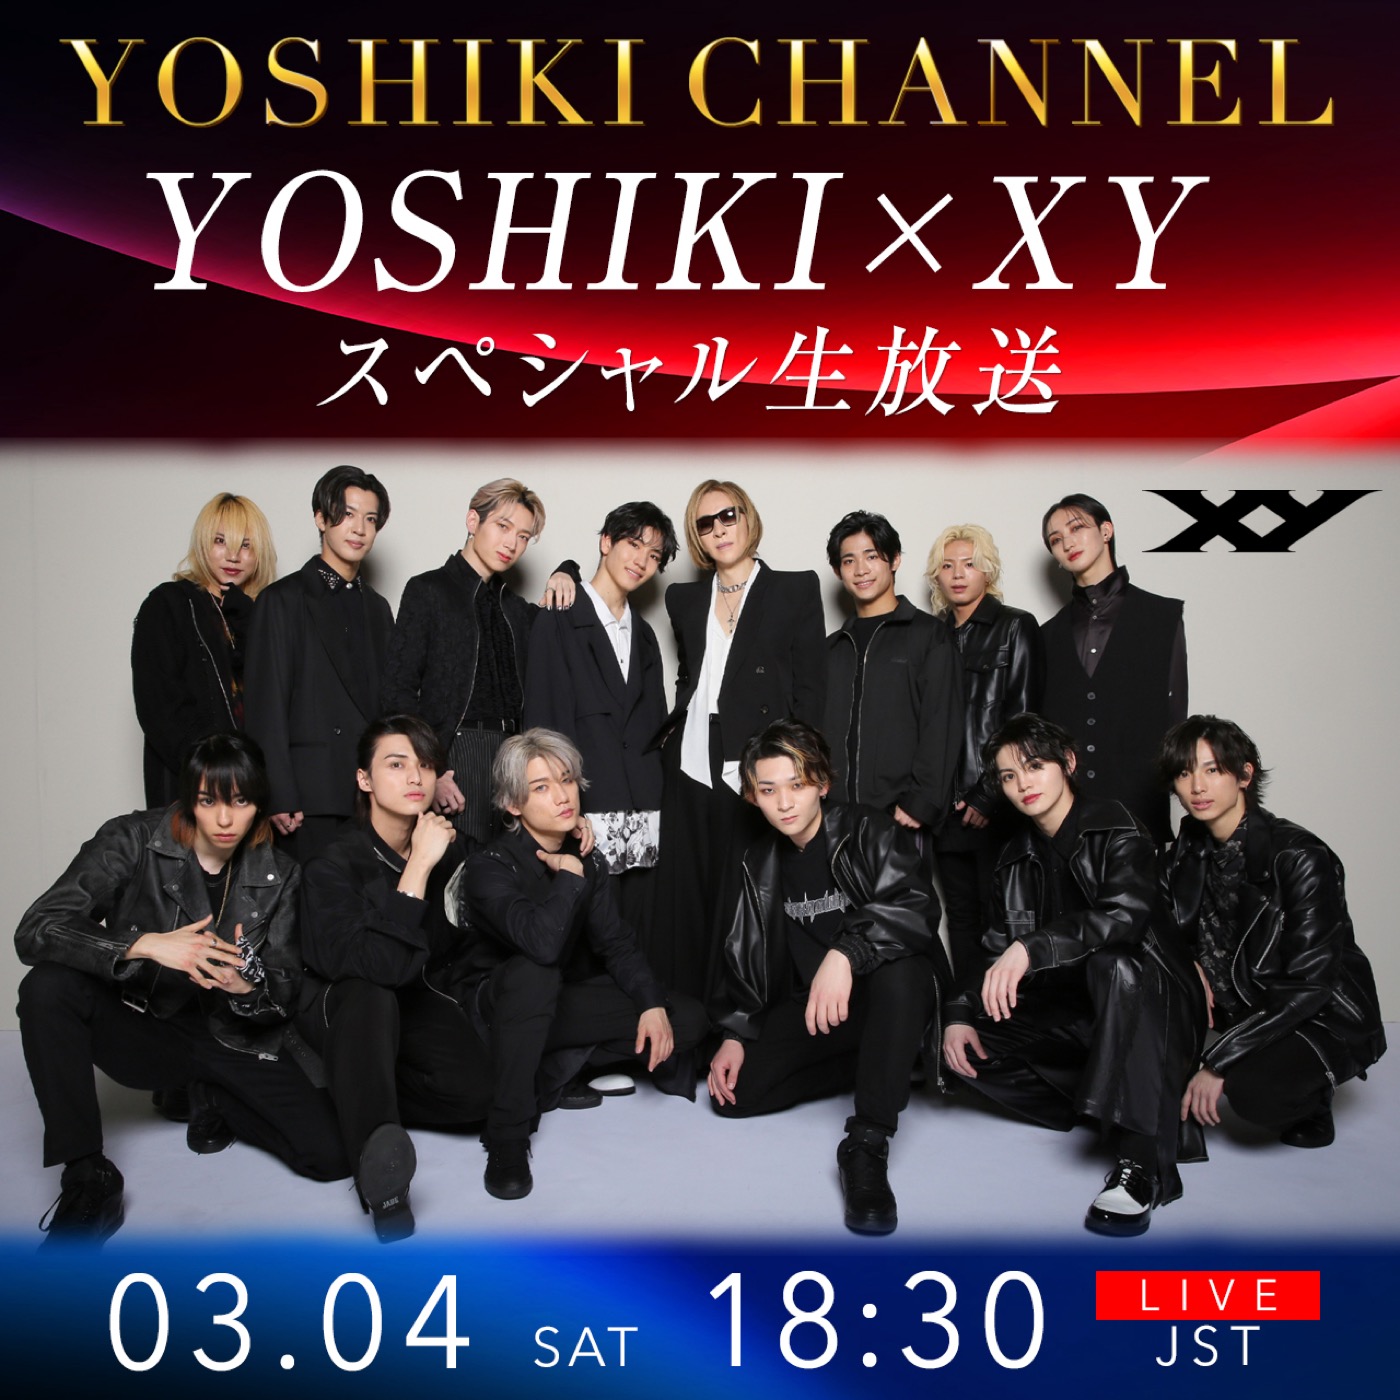 YOSHIKIが『YOSHIKI SUPERSTAR PROJECT X』からデビューしたXYメンバーとの生対談を配信決定